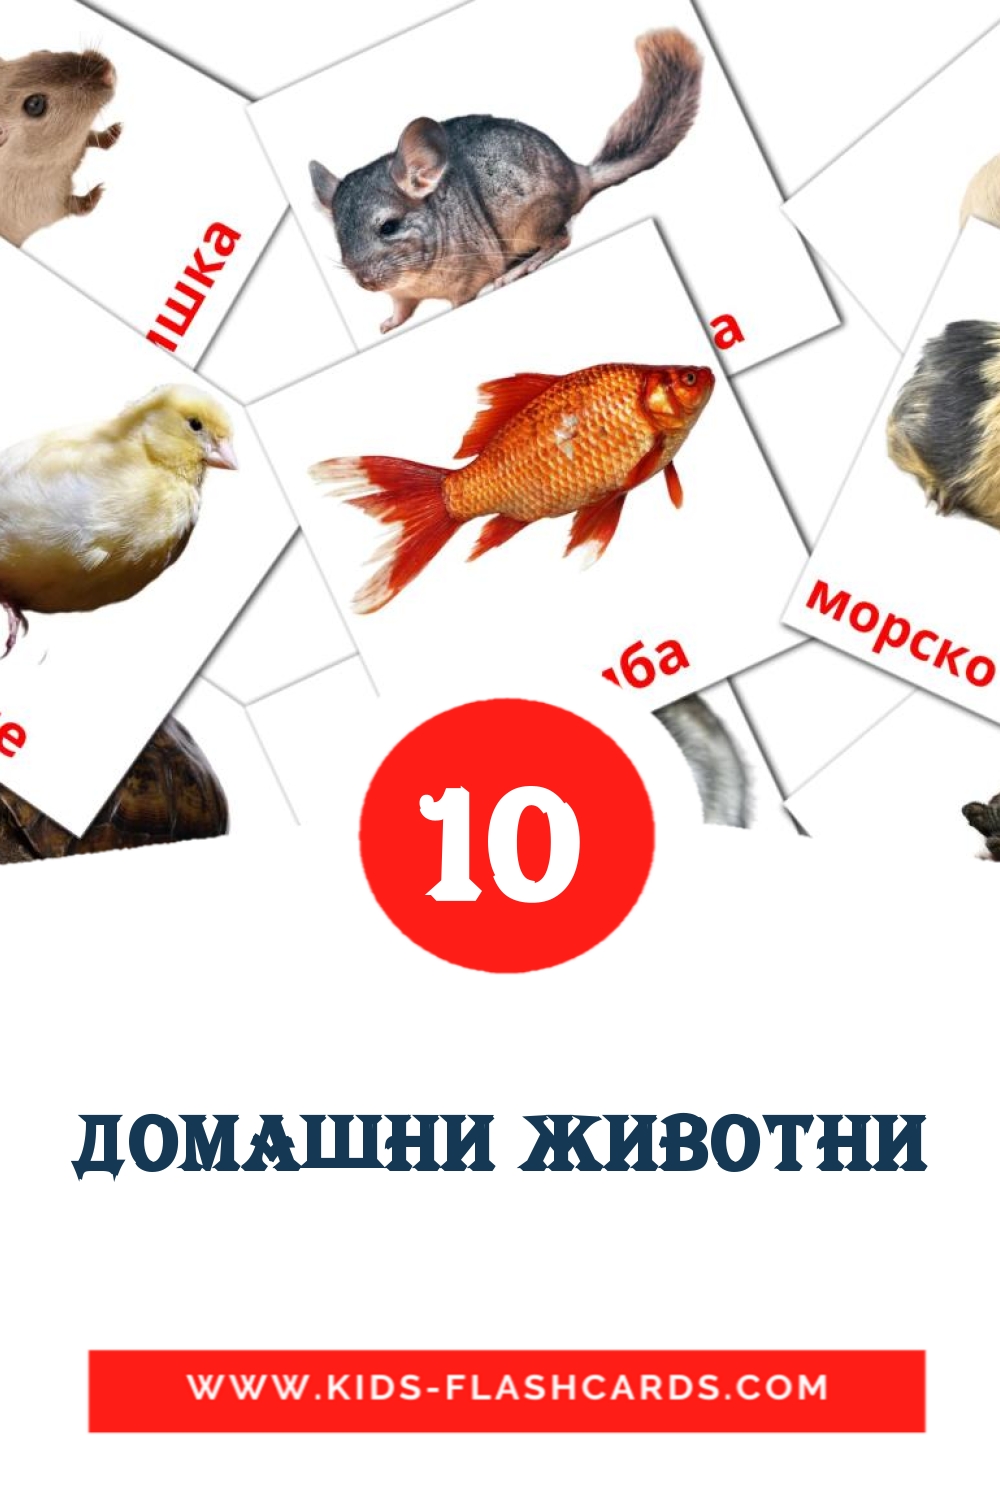 10 carte illustrate di Домашни животни per la scuola materna in bashkir